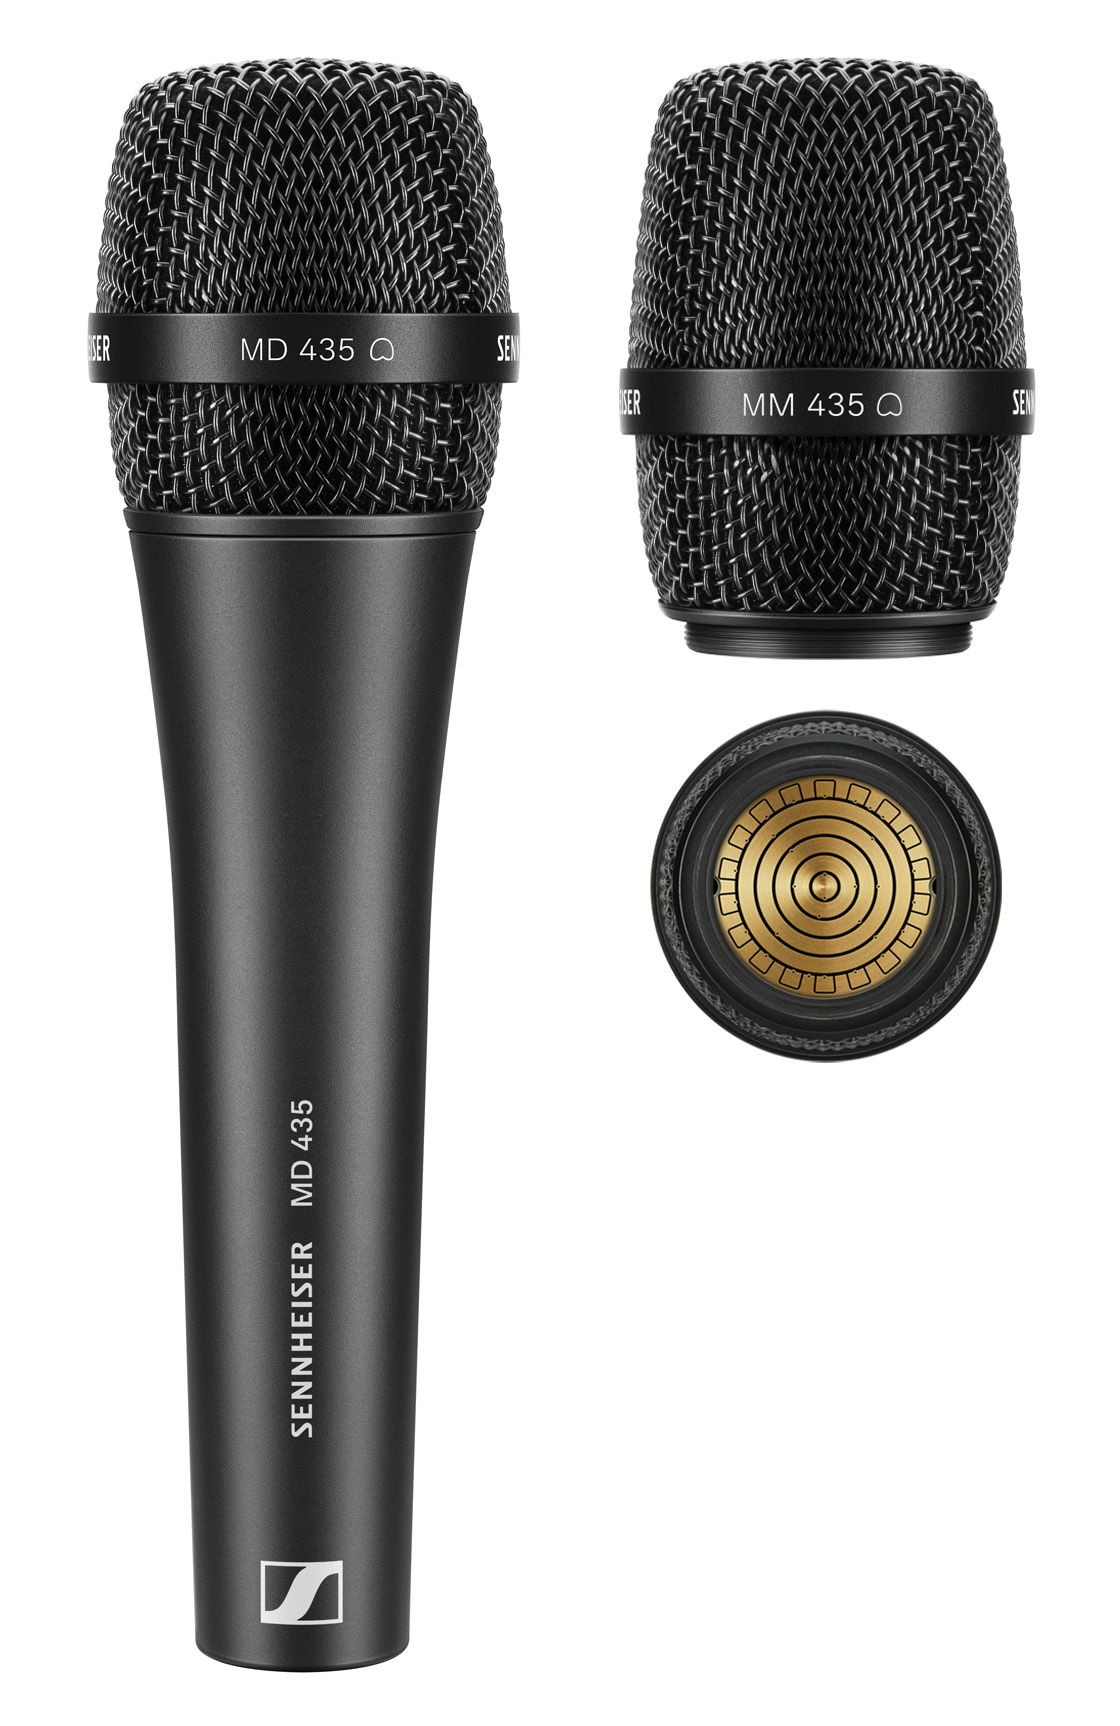 Le microphone vocal filaire MD 435 et la tête de micro MM 435 (ici illustré avec la capsule) à utiliser avec les émetteurs Sennheiser sans fil